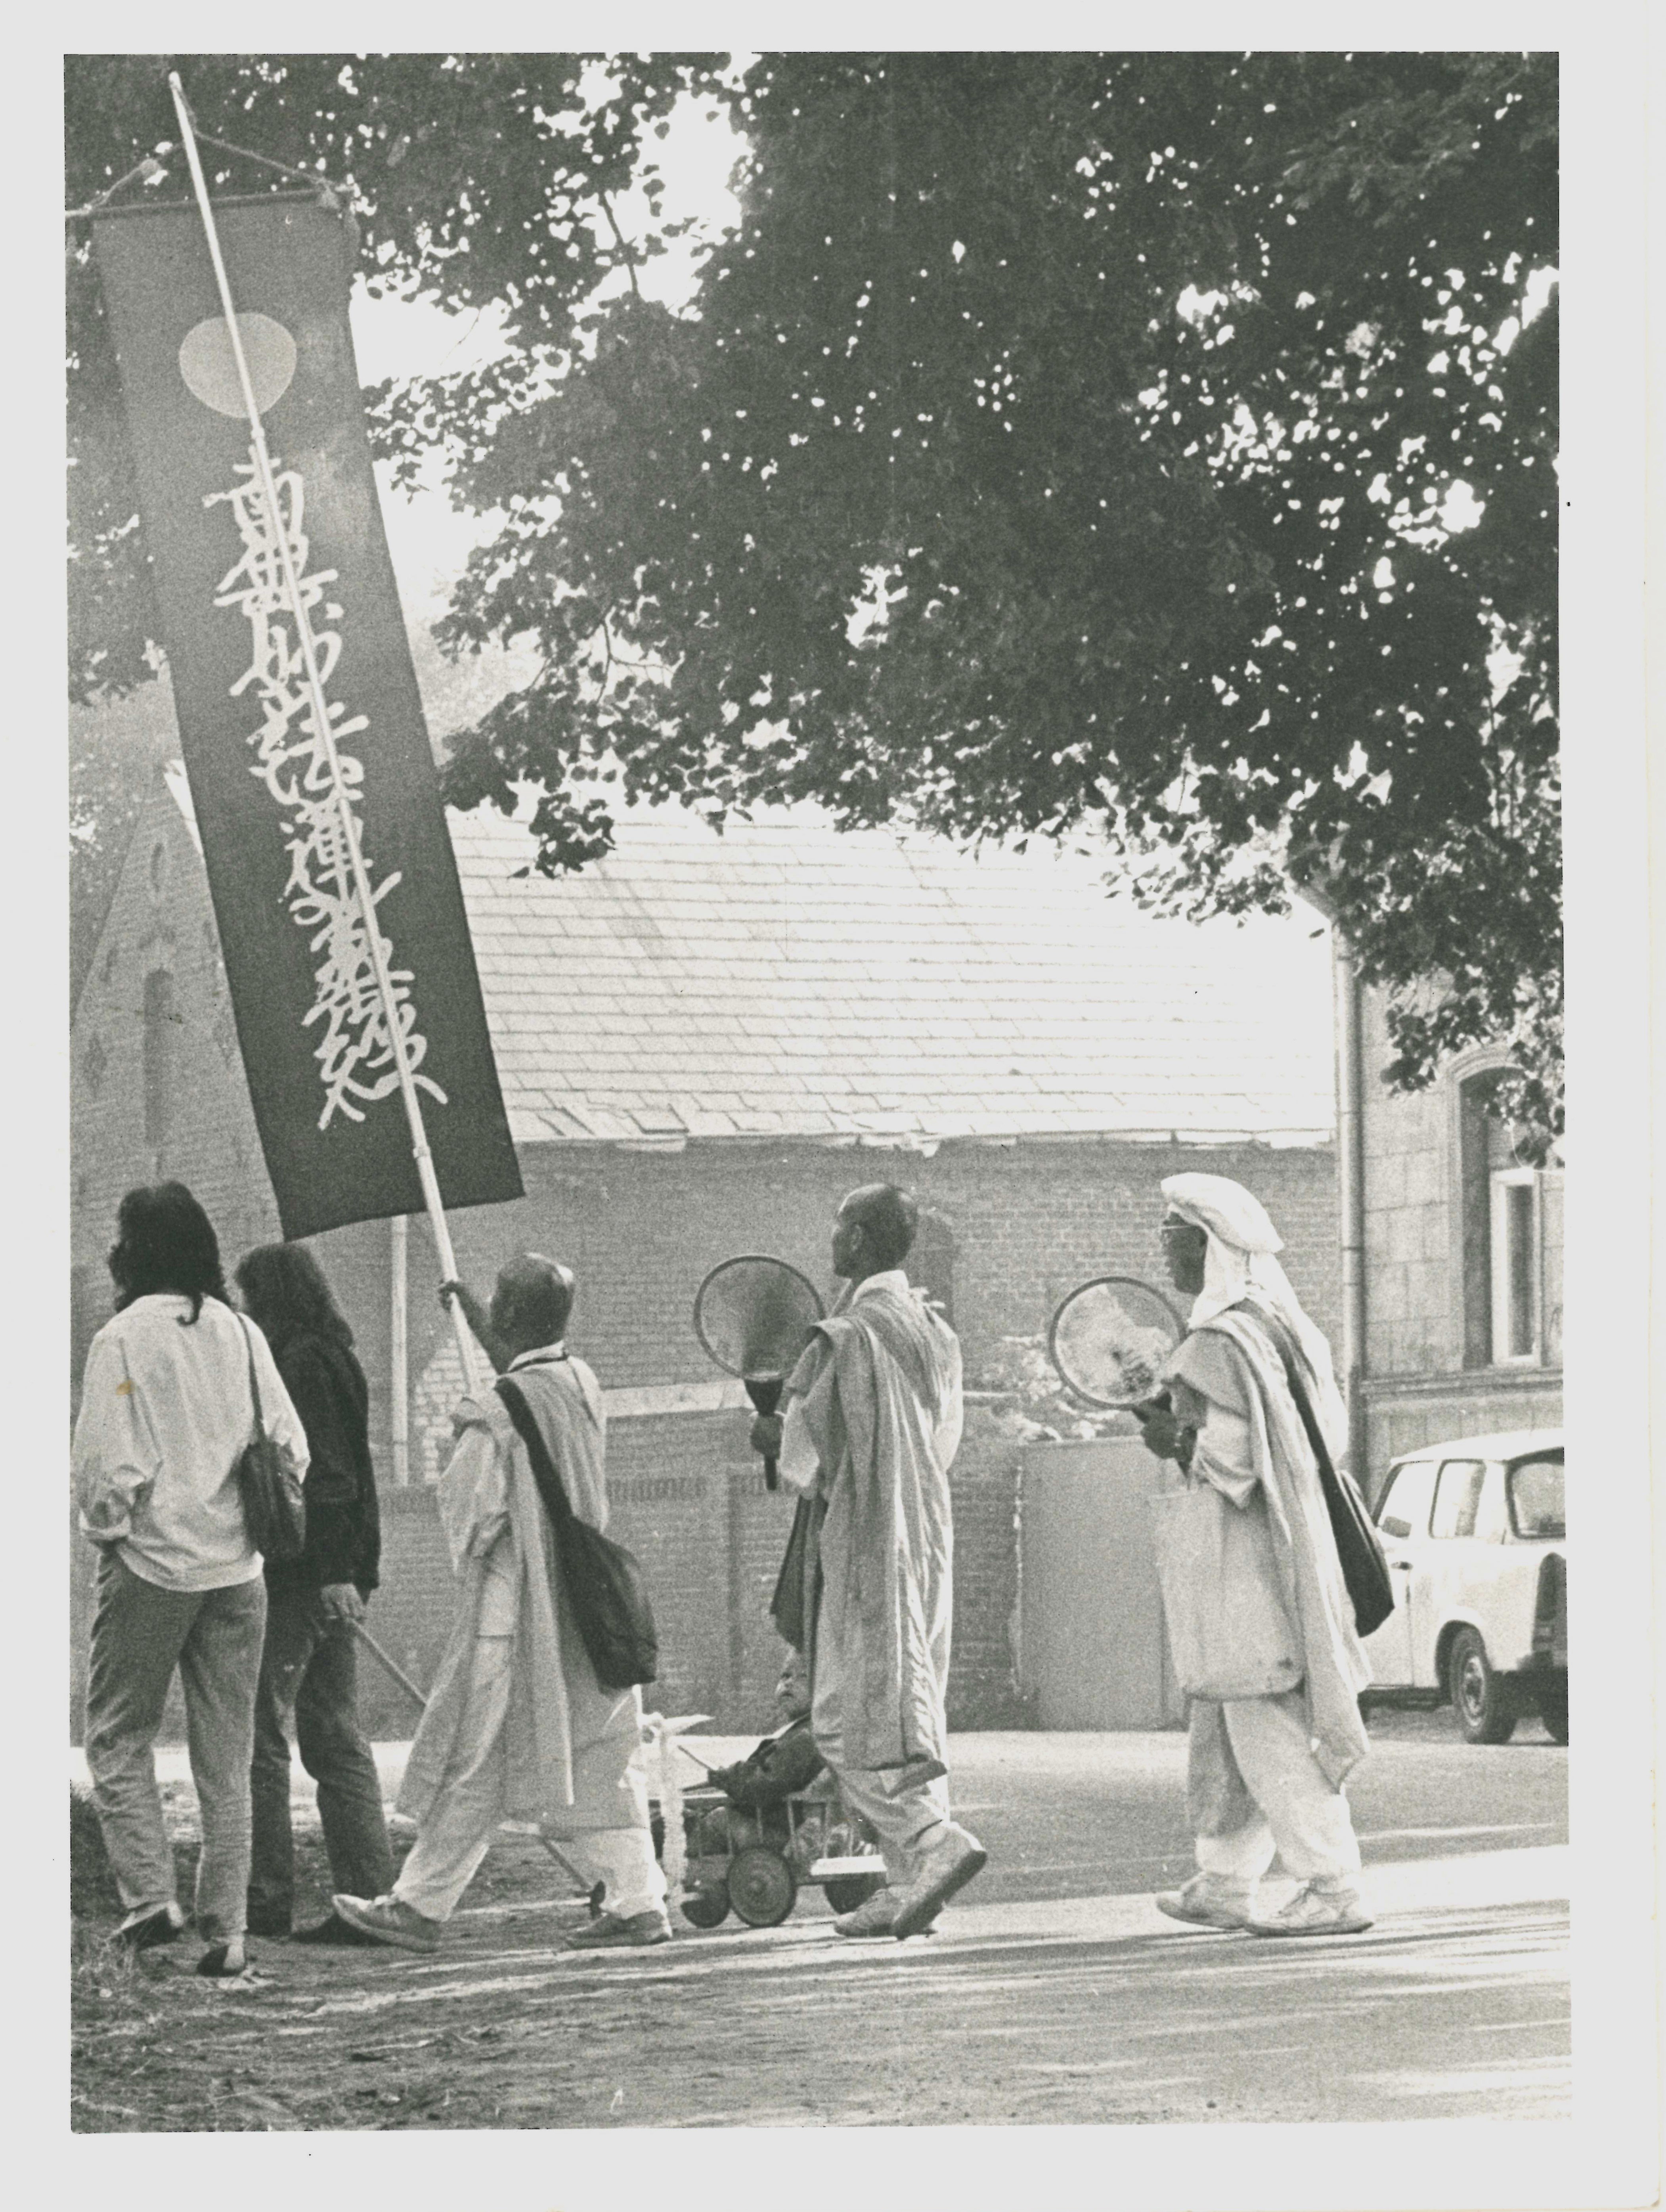 Olof-Palme-Marsch 1987: Buddhistische Mönche mit Transparent (DDR Geschichtsmuseum im Dokumentationszentrum Perleberg CC BY-SA)